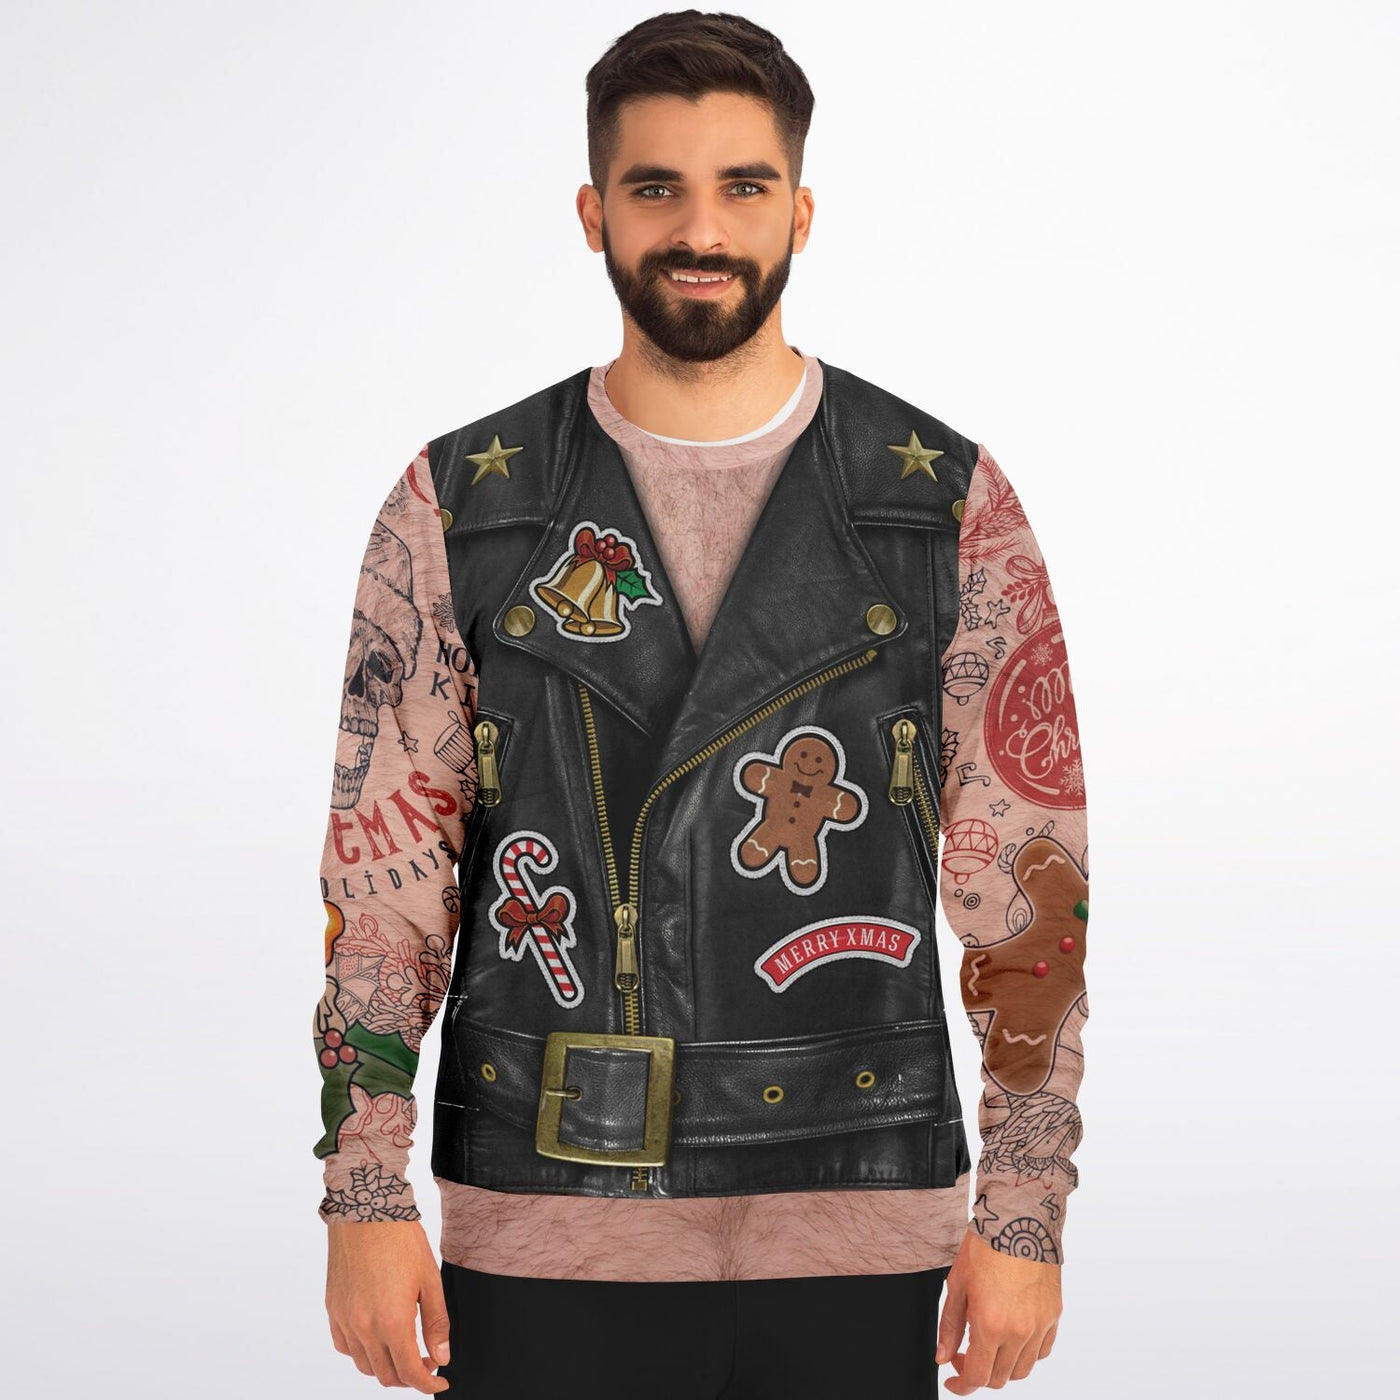 Santa Claus Motorcycle Vest | Ugly Xmas Sweatshirt